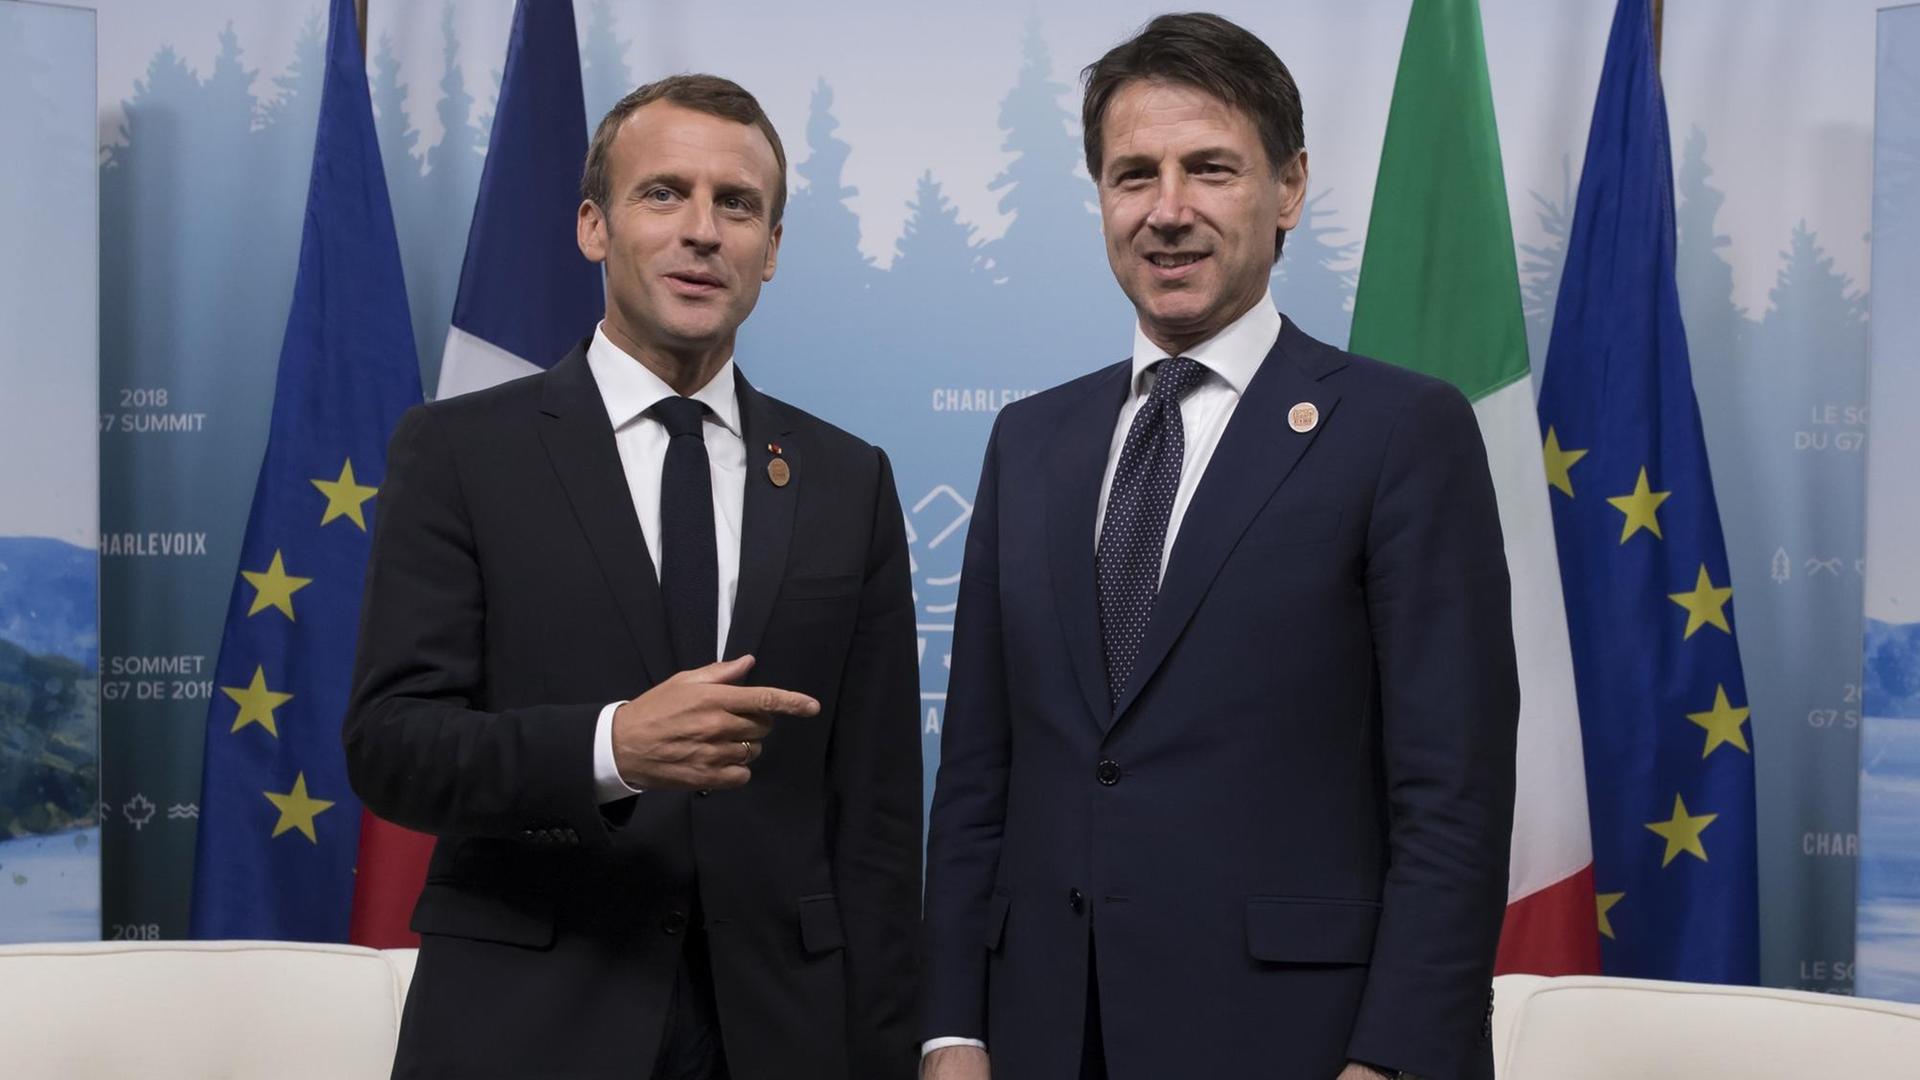 Frankreichs Präsident Emmanuel Macron trifft Italiens Premier Guiseppe Conte währende des G7 Gipfels in Charlevoix in Kanada am 08.06.2018